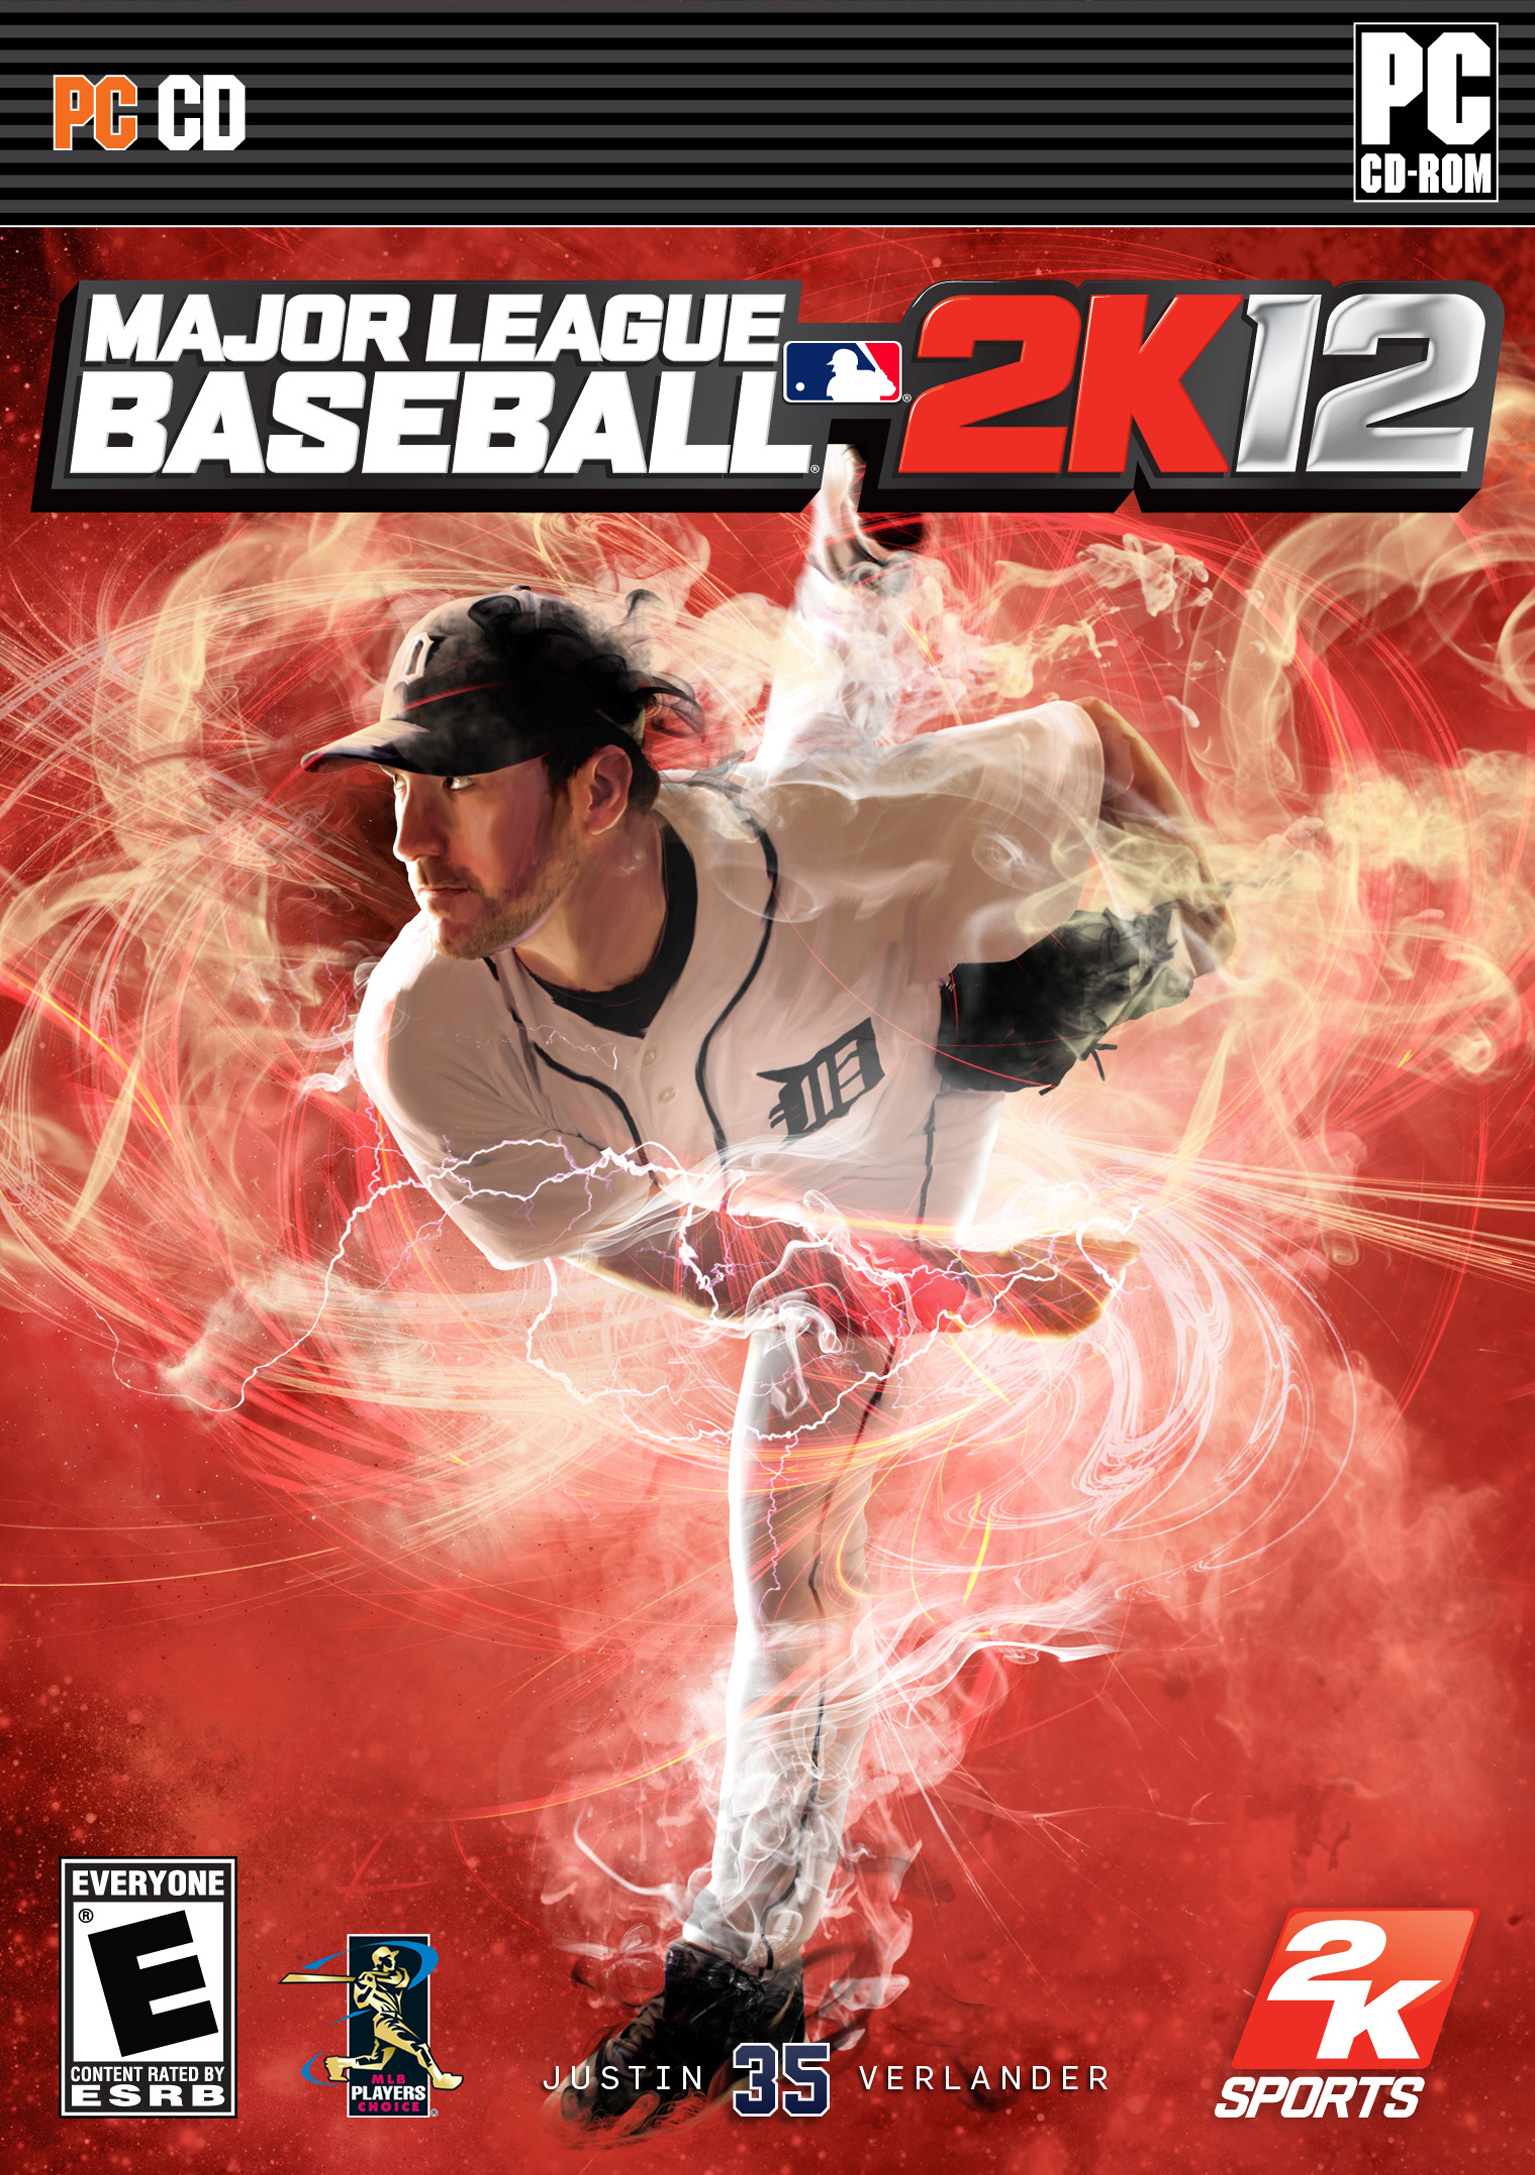 Major League Baseball 2K12 - pedn DVD obal